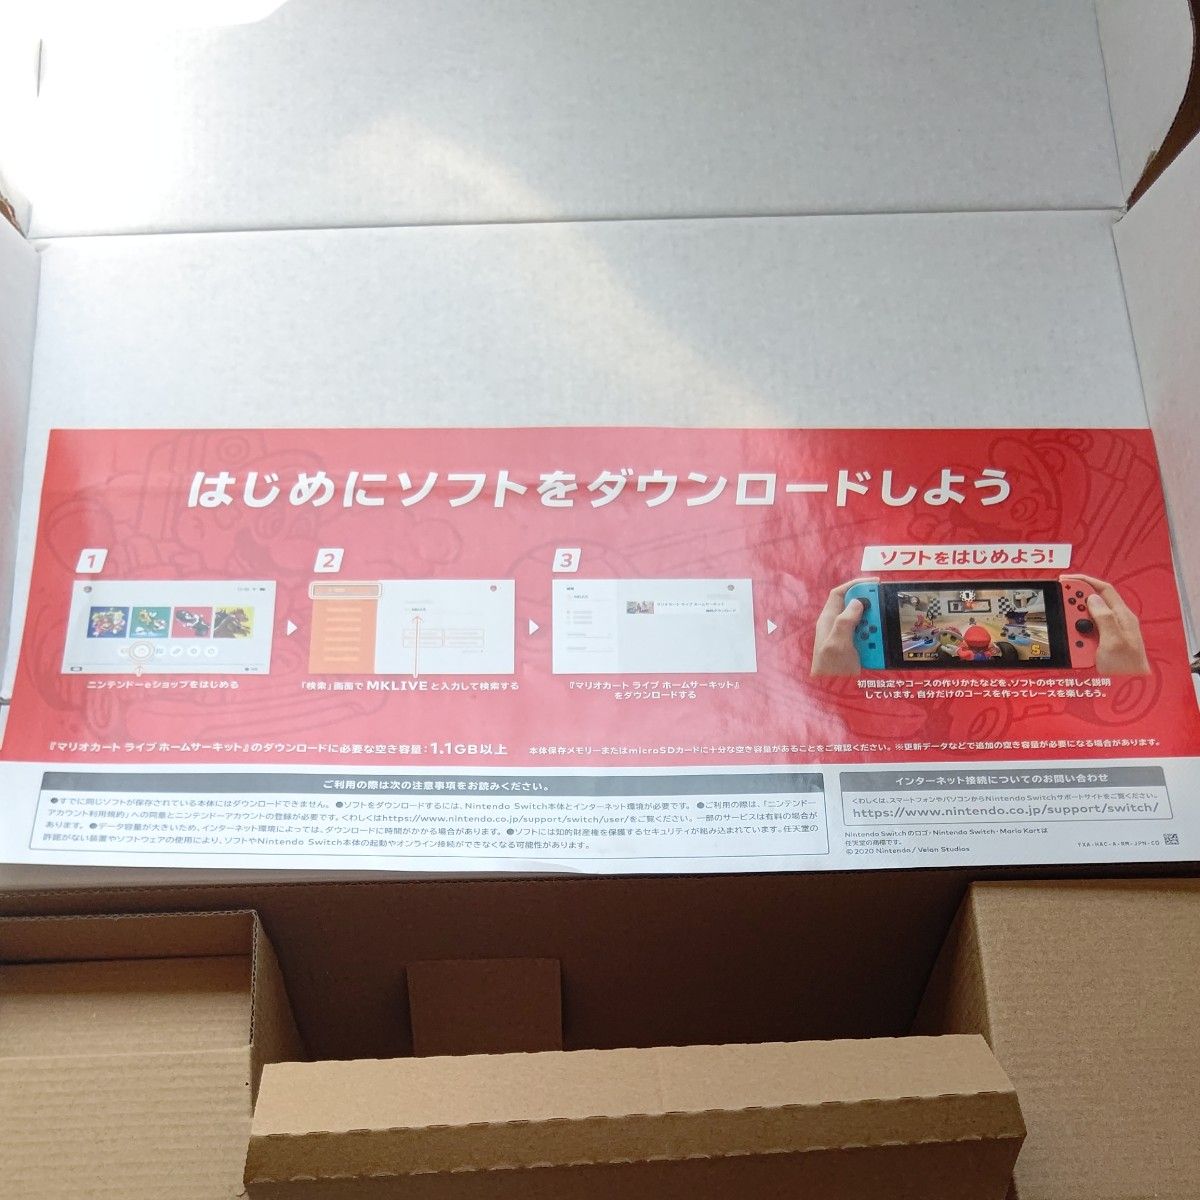 【Switch】 マリオカート ライブ ホームサーキット マリオセット(中古)+ルイージセット(中古)